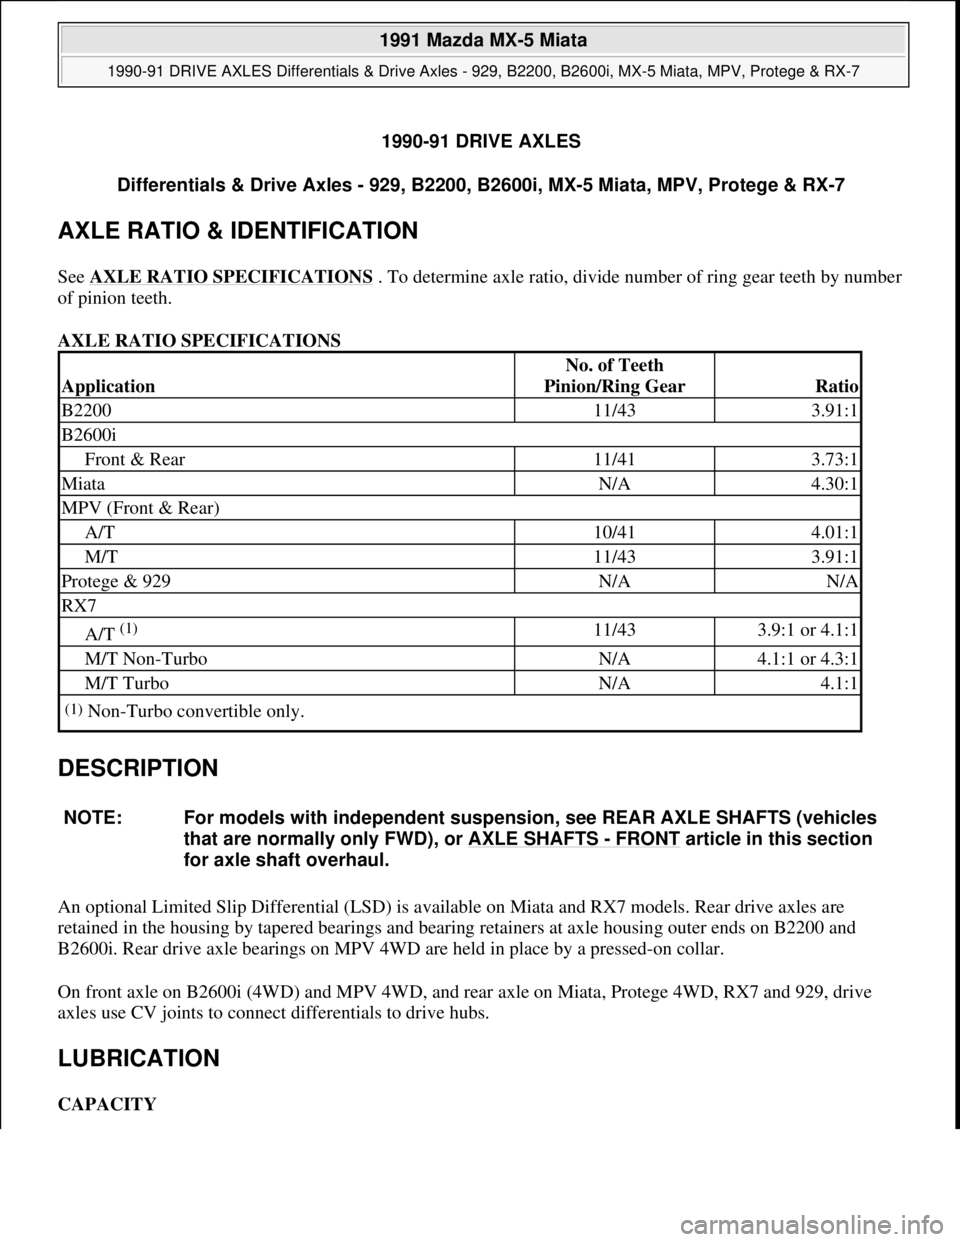 MAZDA MIATA 1991  Factory Service Manual 1990-91 DRIVE AXLES
Differentials & Drive Axles - 929, B2200, B2600i, MX-5 Miata, MPV, Protege & RX-7 
AXLE RATIO & IDENTIFICATION 
See AXLE RATIO SPECIFICATIONS . To determine axle ratio, divide numb